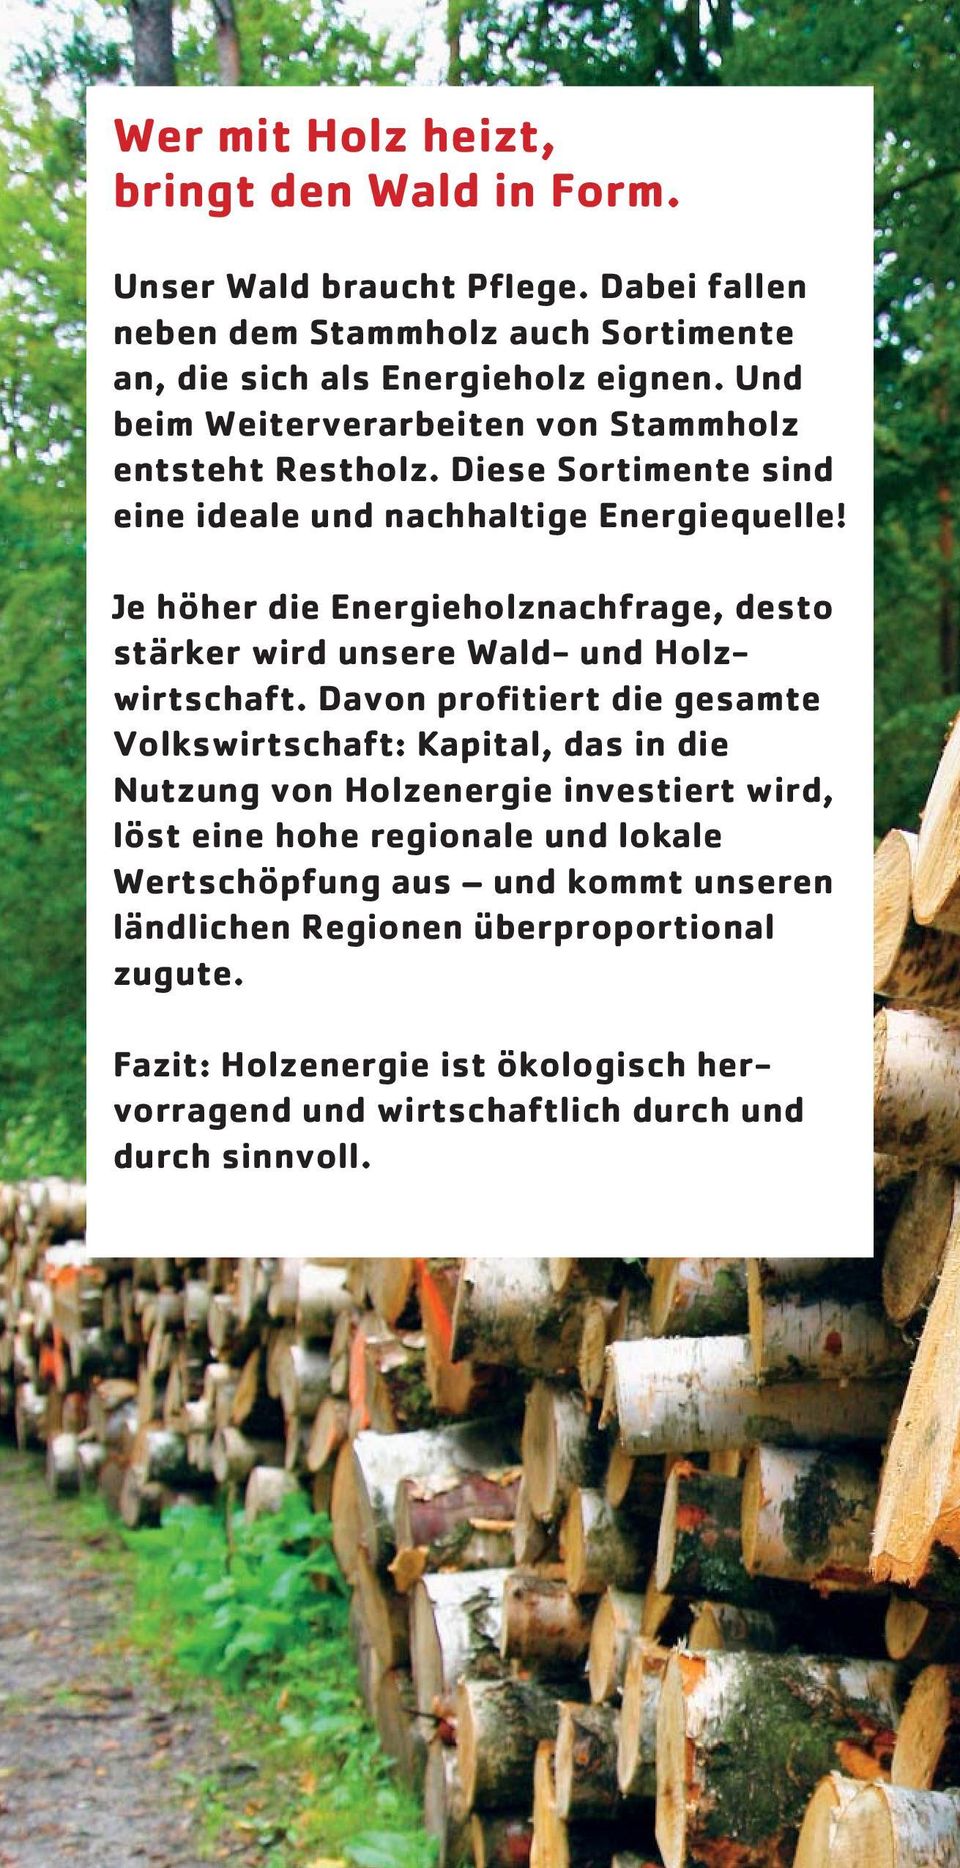 Je höher die Energieholznachfrage, desto stärker wird unsere Wald- und Holzwirtschaft.